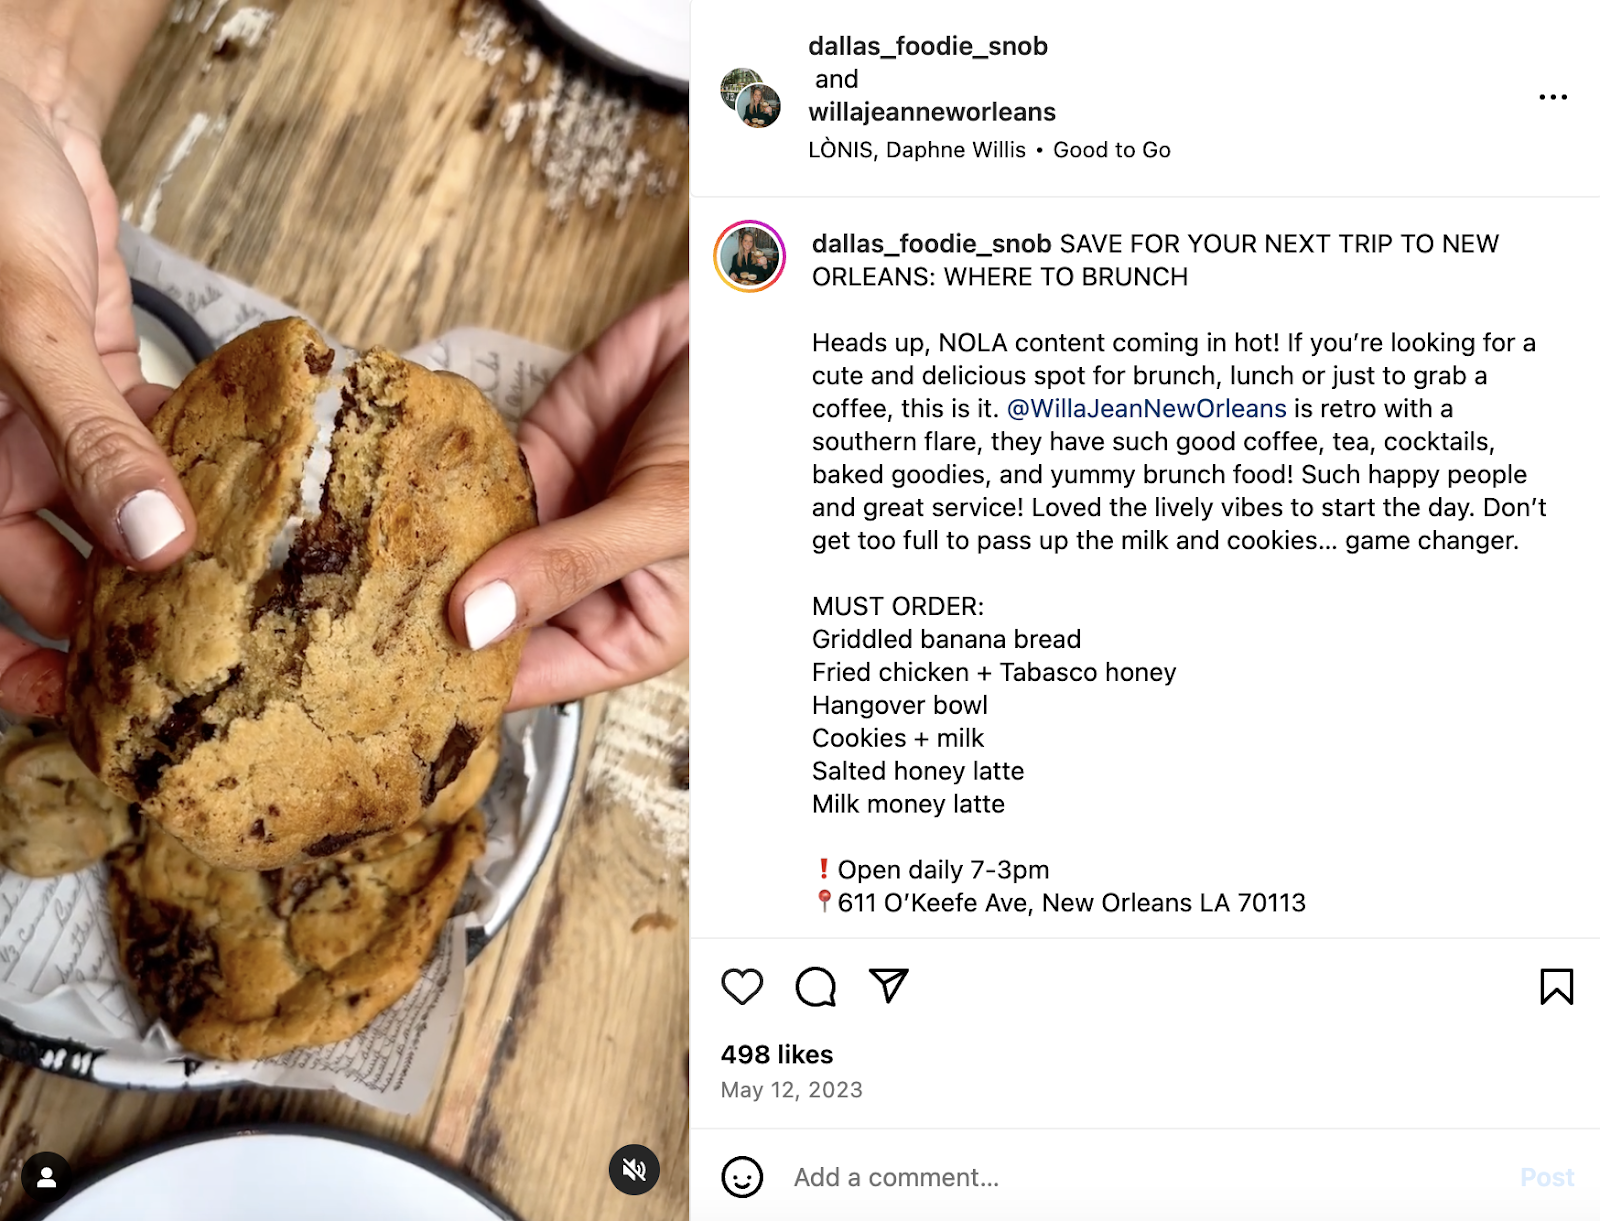 ایده های خلاقانه بازاریابی رستوران: یک پست تأثیرگذار که Willa Jean، یک رستوران نیواورلئان، در صفحه اینستاگرام خود مجدداً به اشتراک گذاشت.